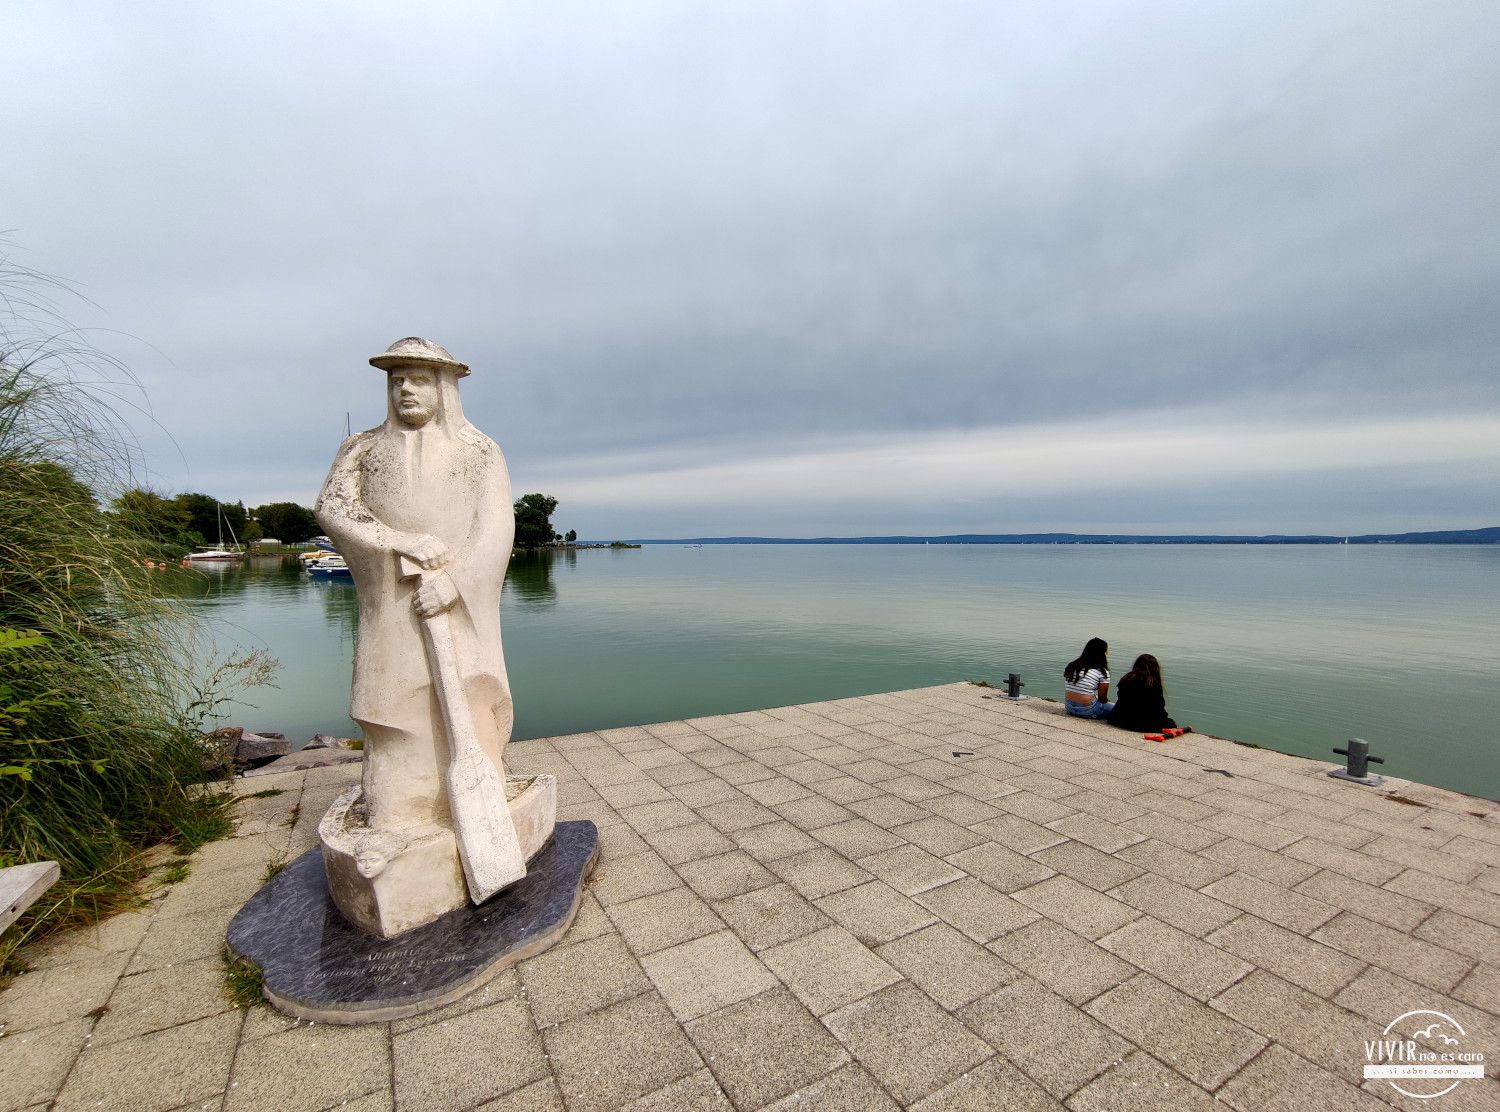 Escultura en Révfülöp al Lago Balaton (Hungría)